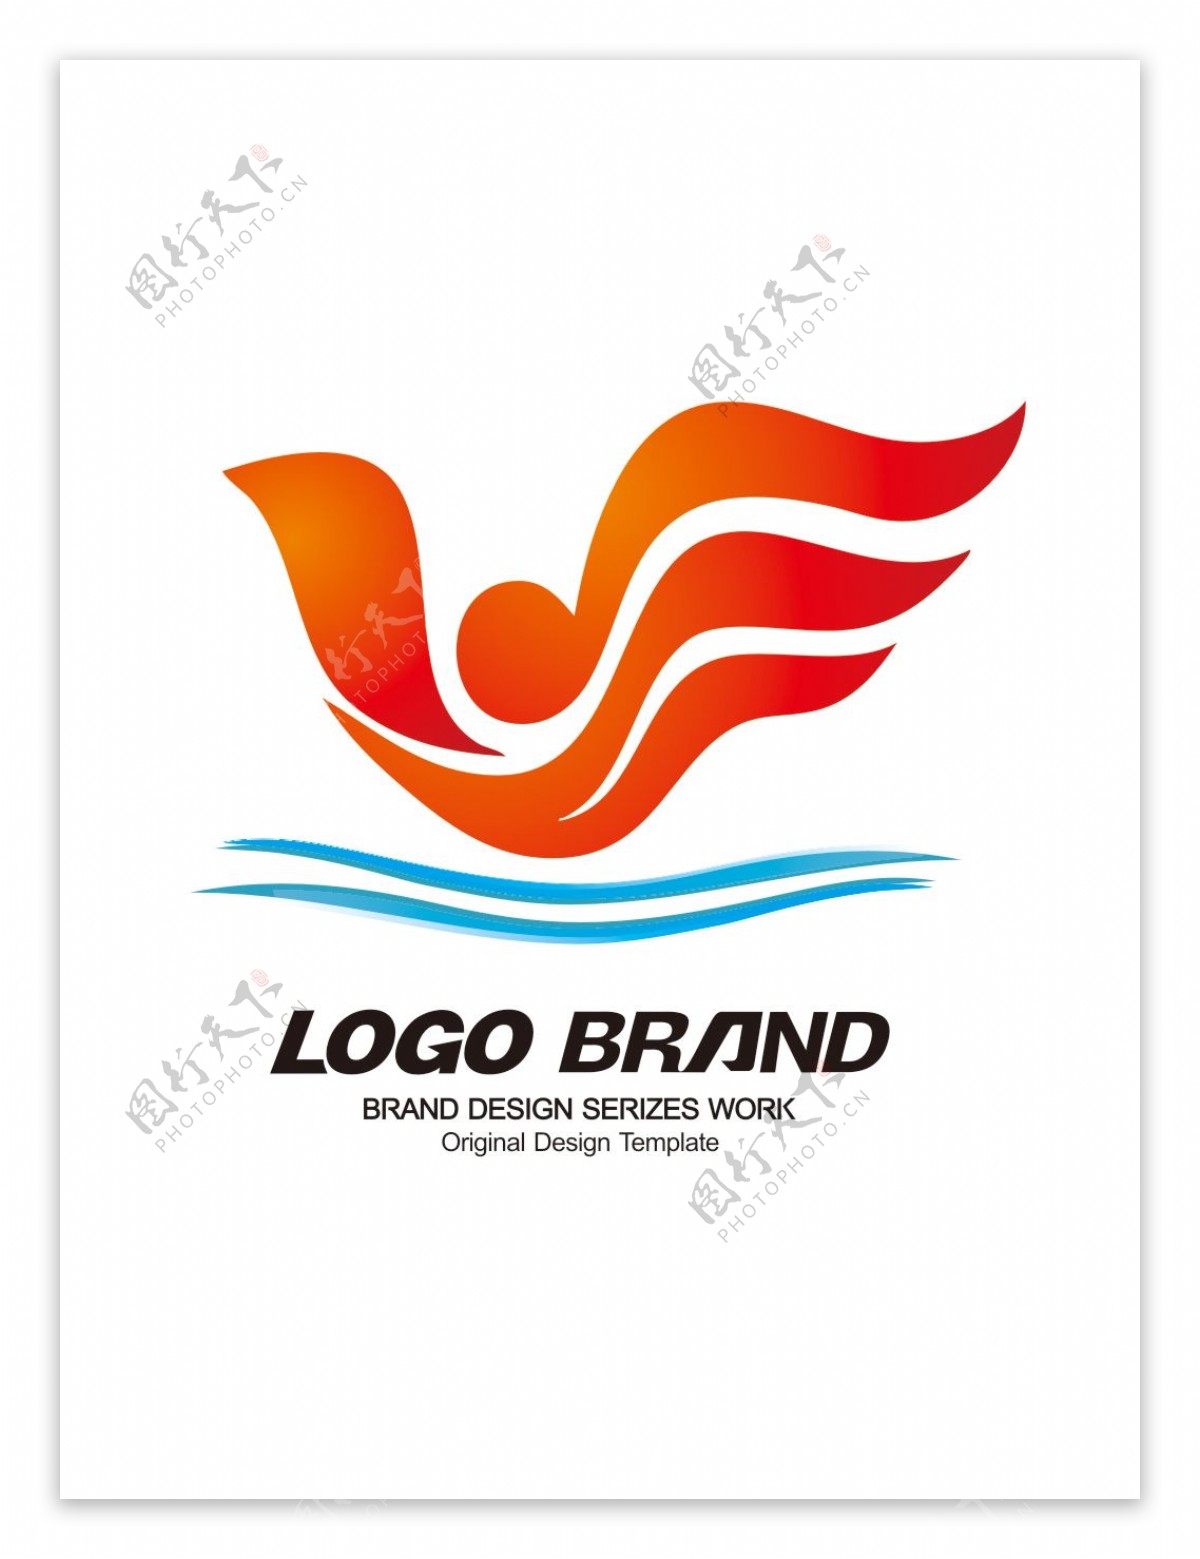 国际化红黄音乐学校logo公司标志设计